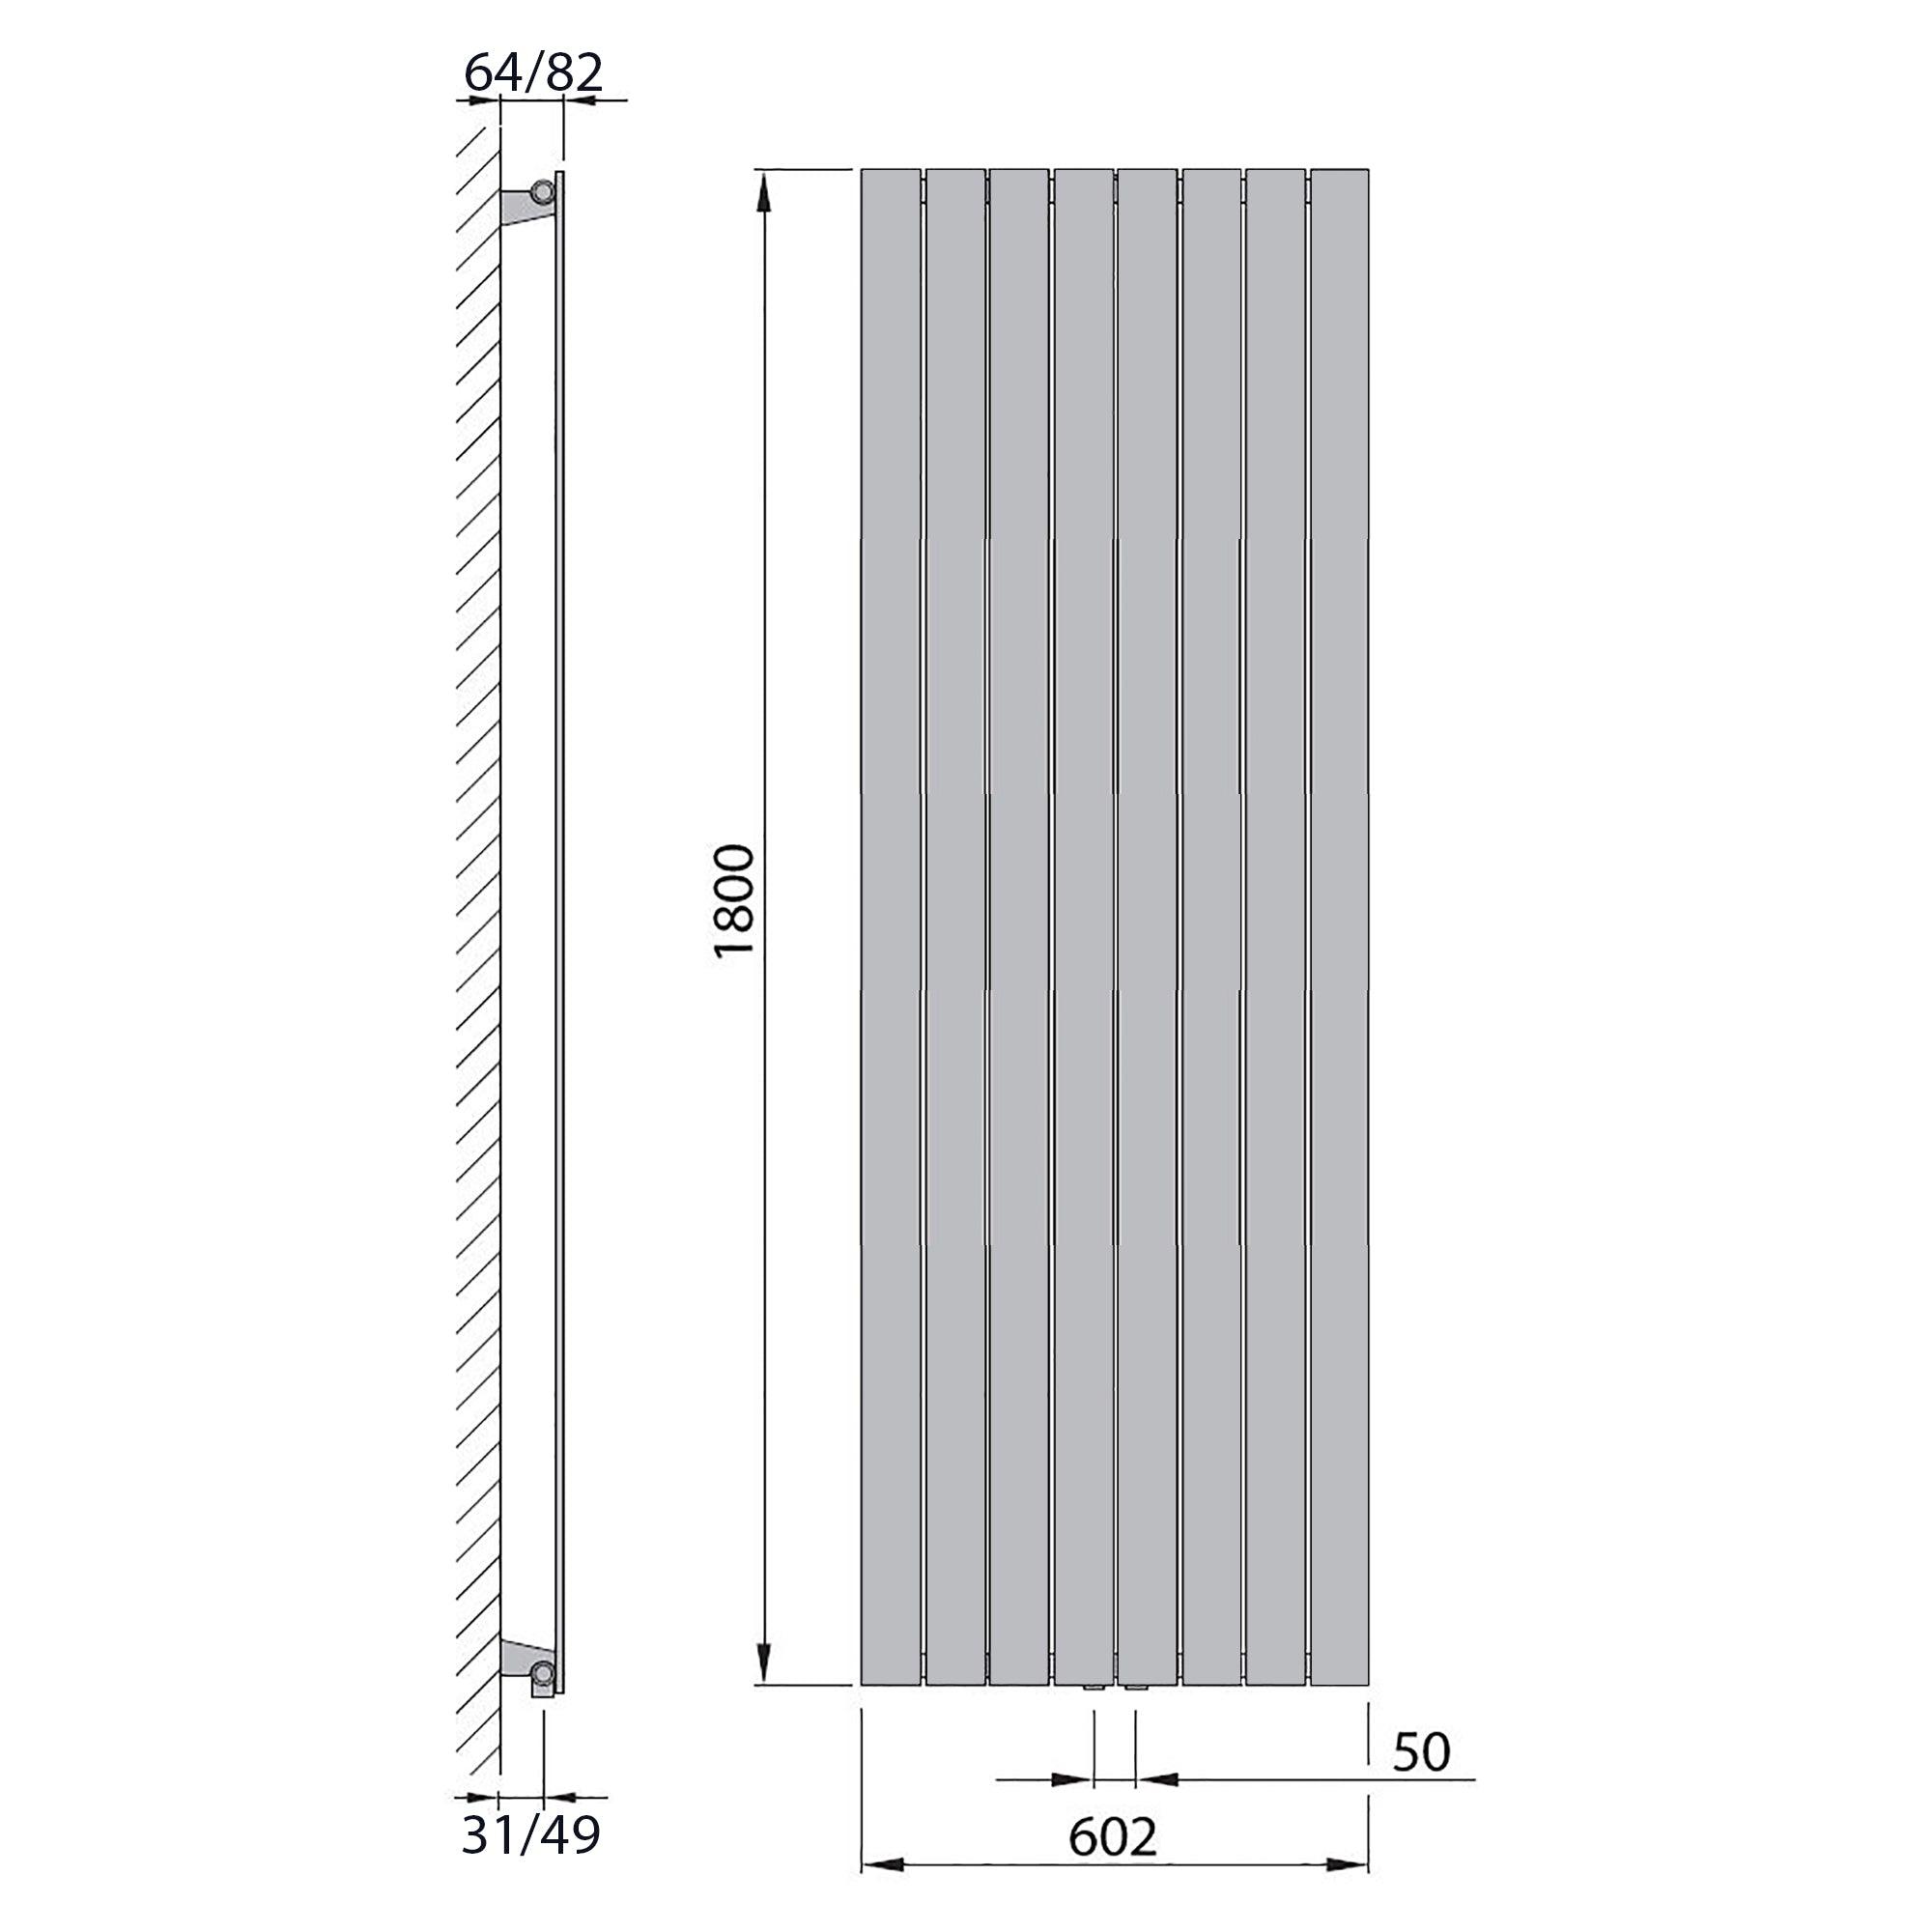 Design Paneelheizkörper vertikal 1800 x 602 weiß Heizkörper Badheizkörper flach Badezimmer Heizung technische Zeichnung - heizkoerper.shop